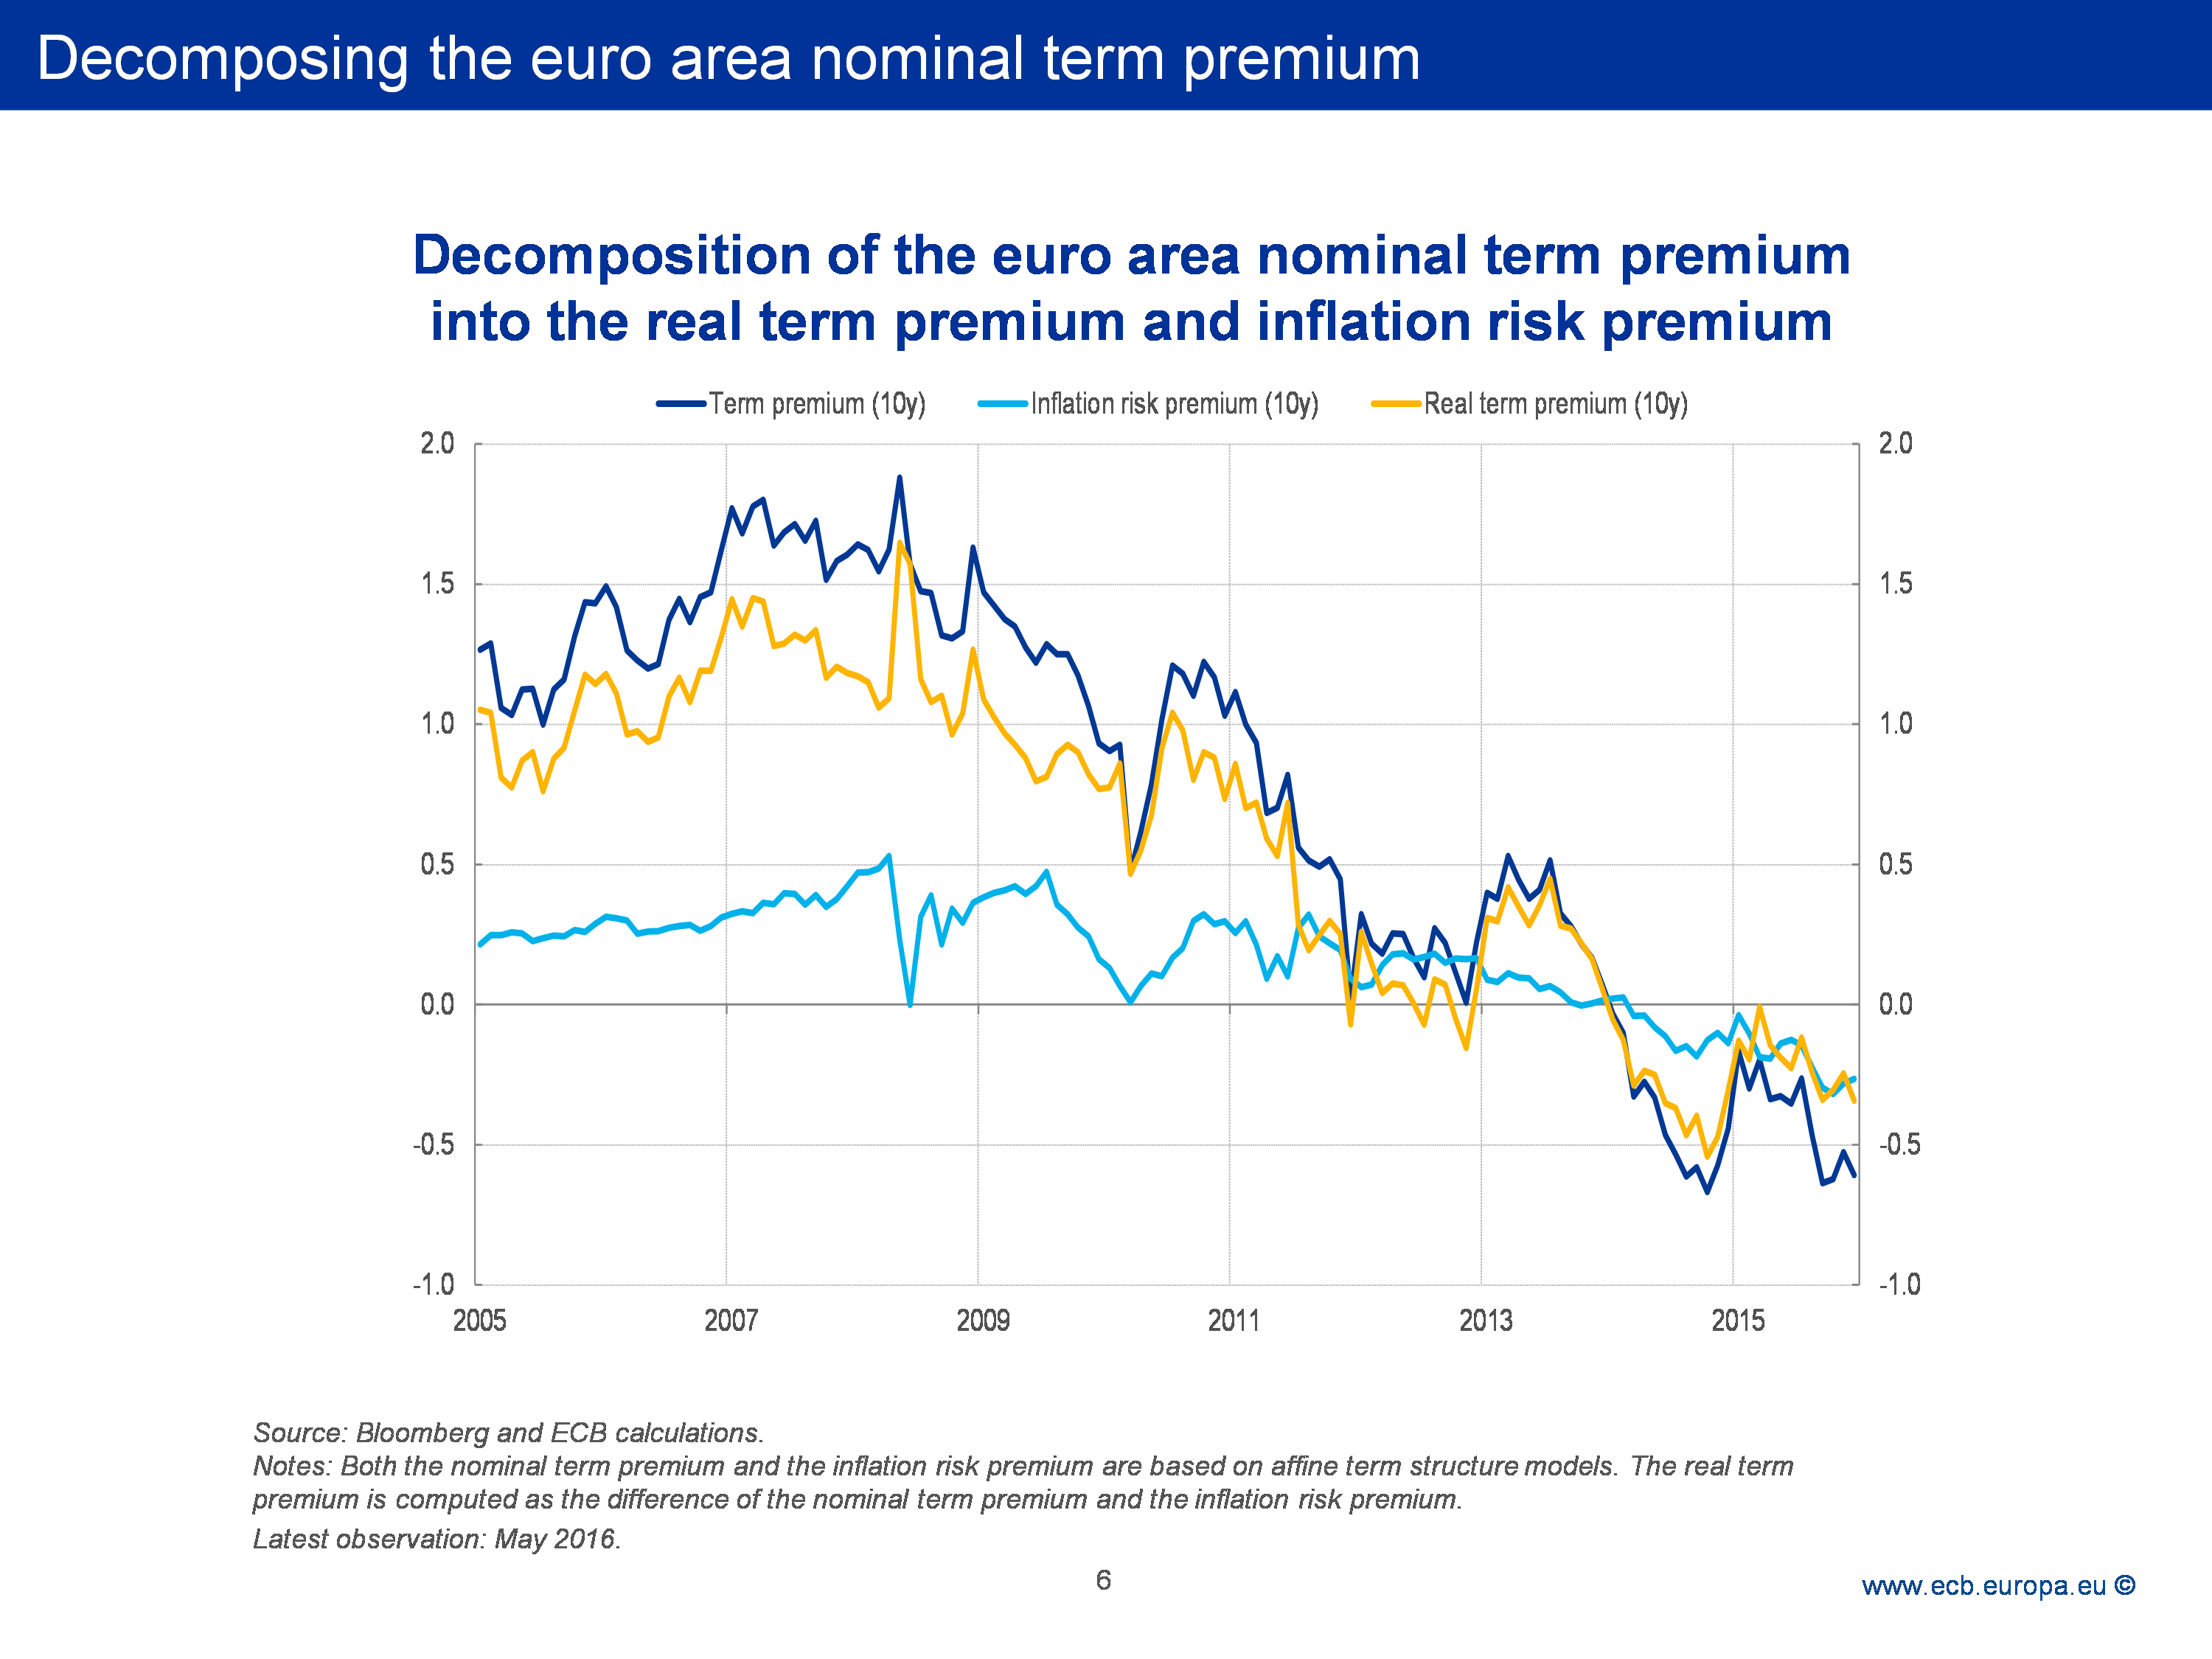 Decomposing the Euro Area Nominal Term Premium